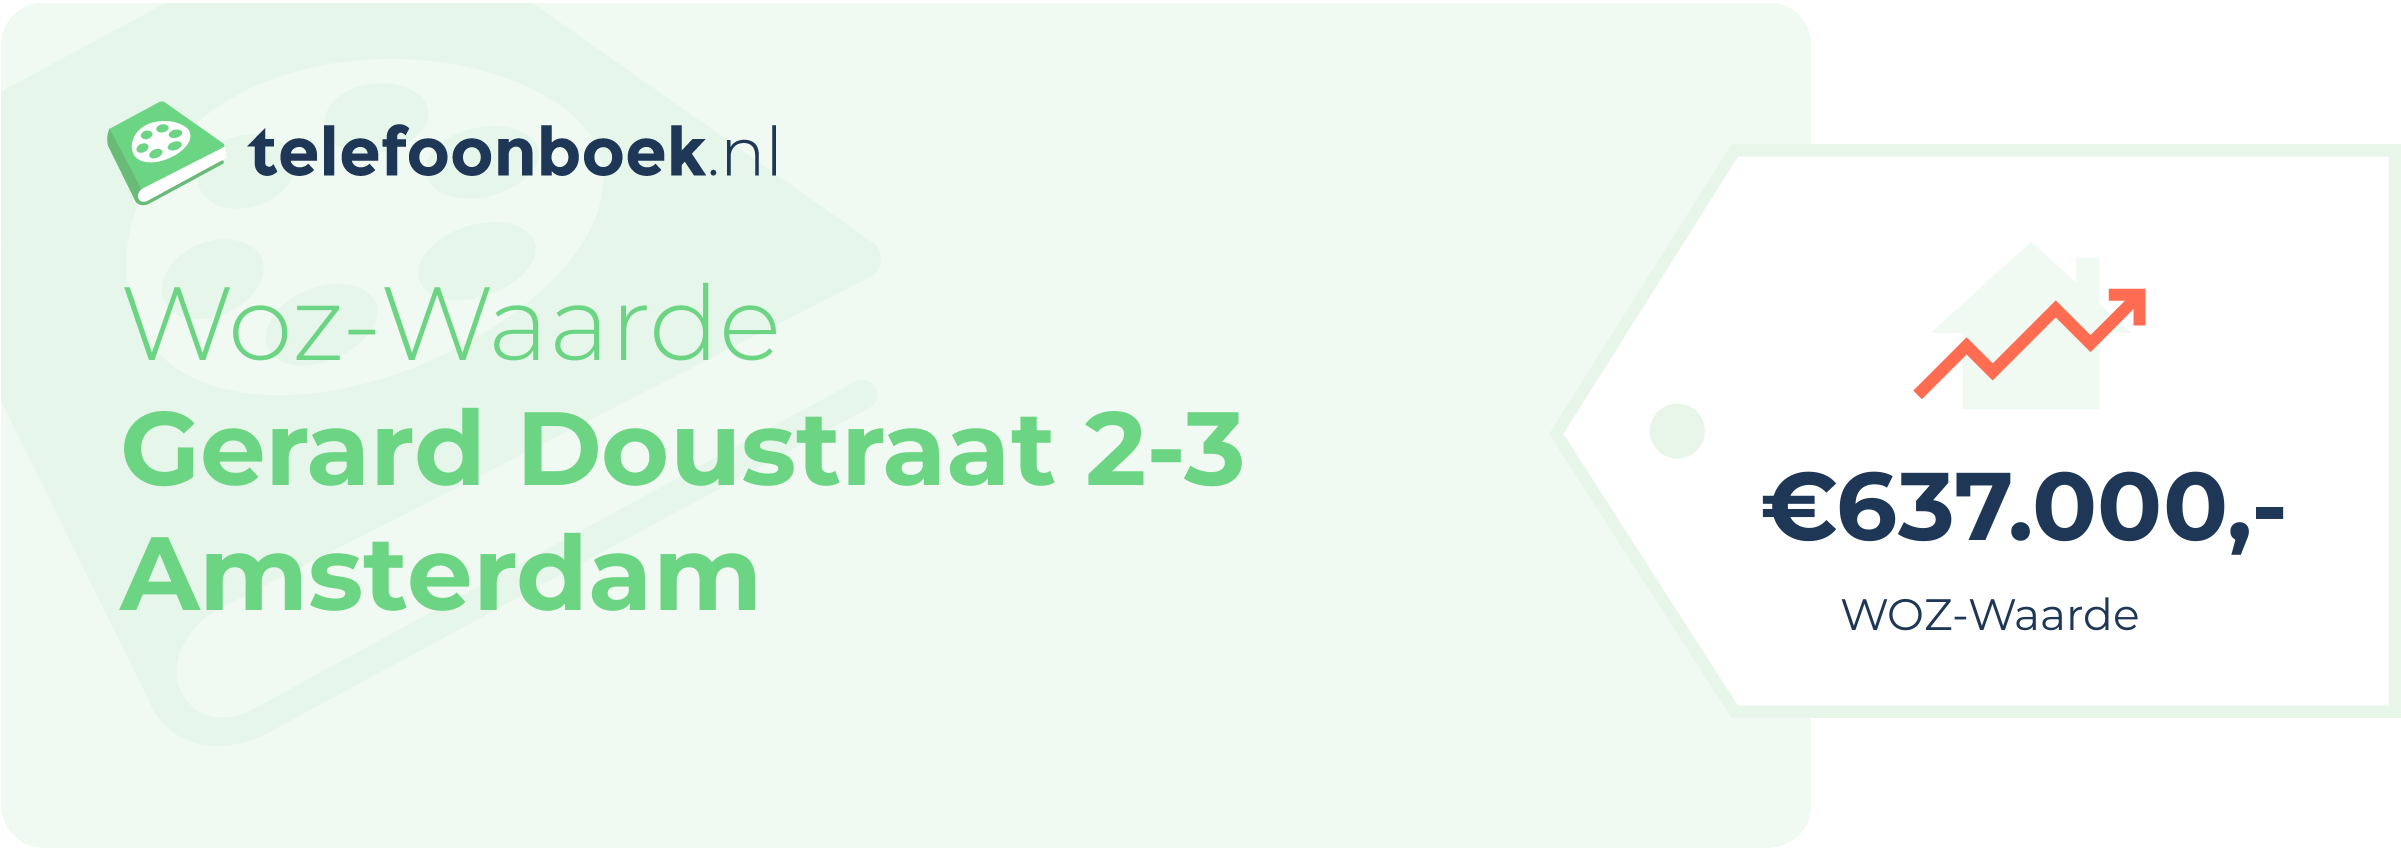 WOZ-waarde Gerard Doustraat 2-3 Amsterdam